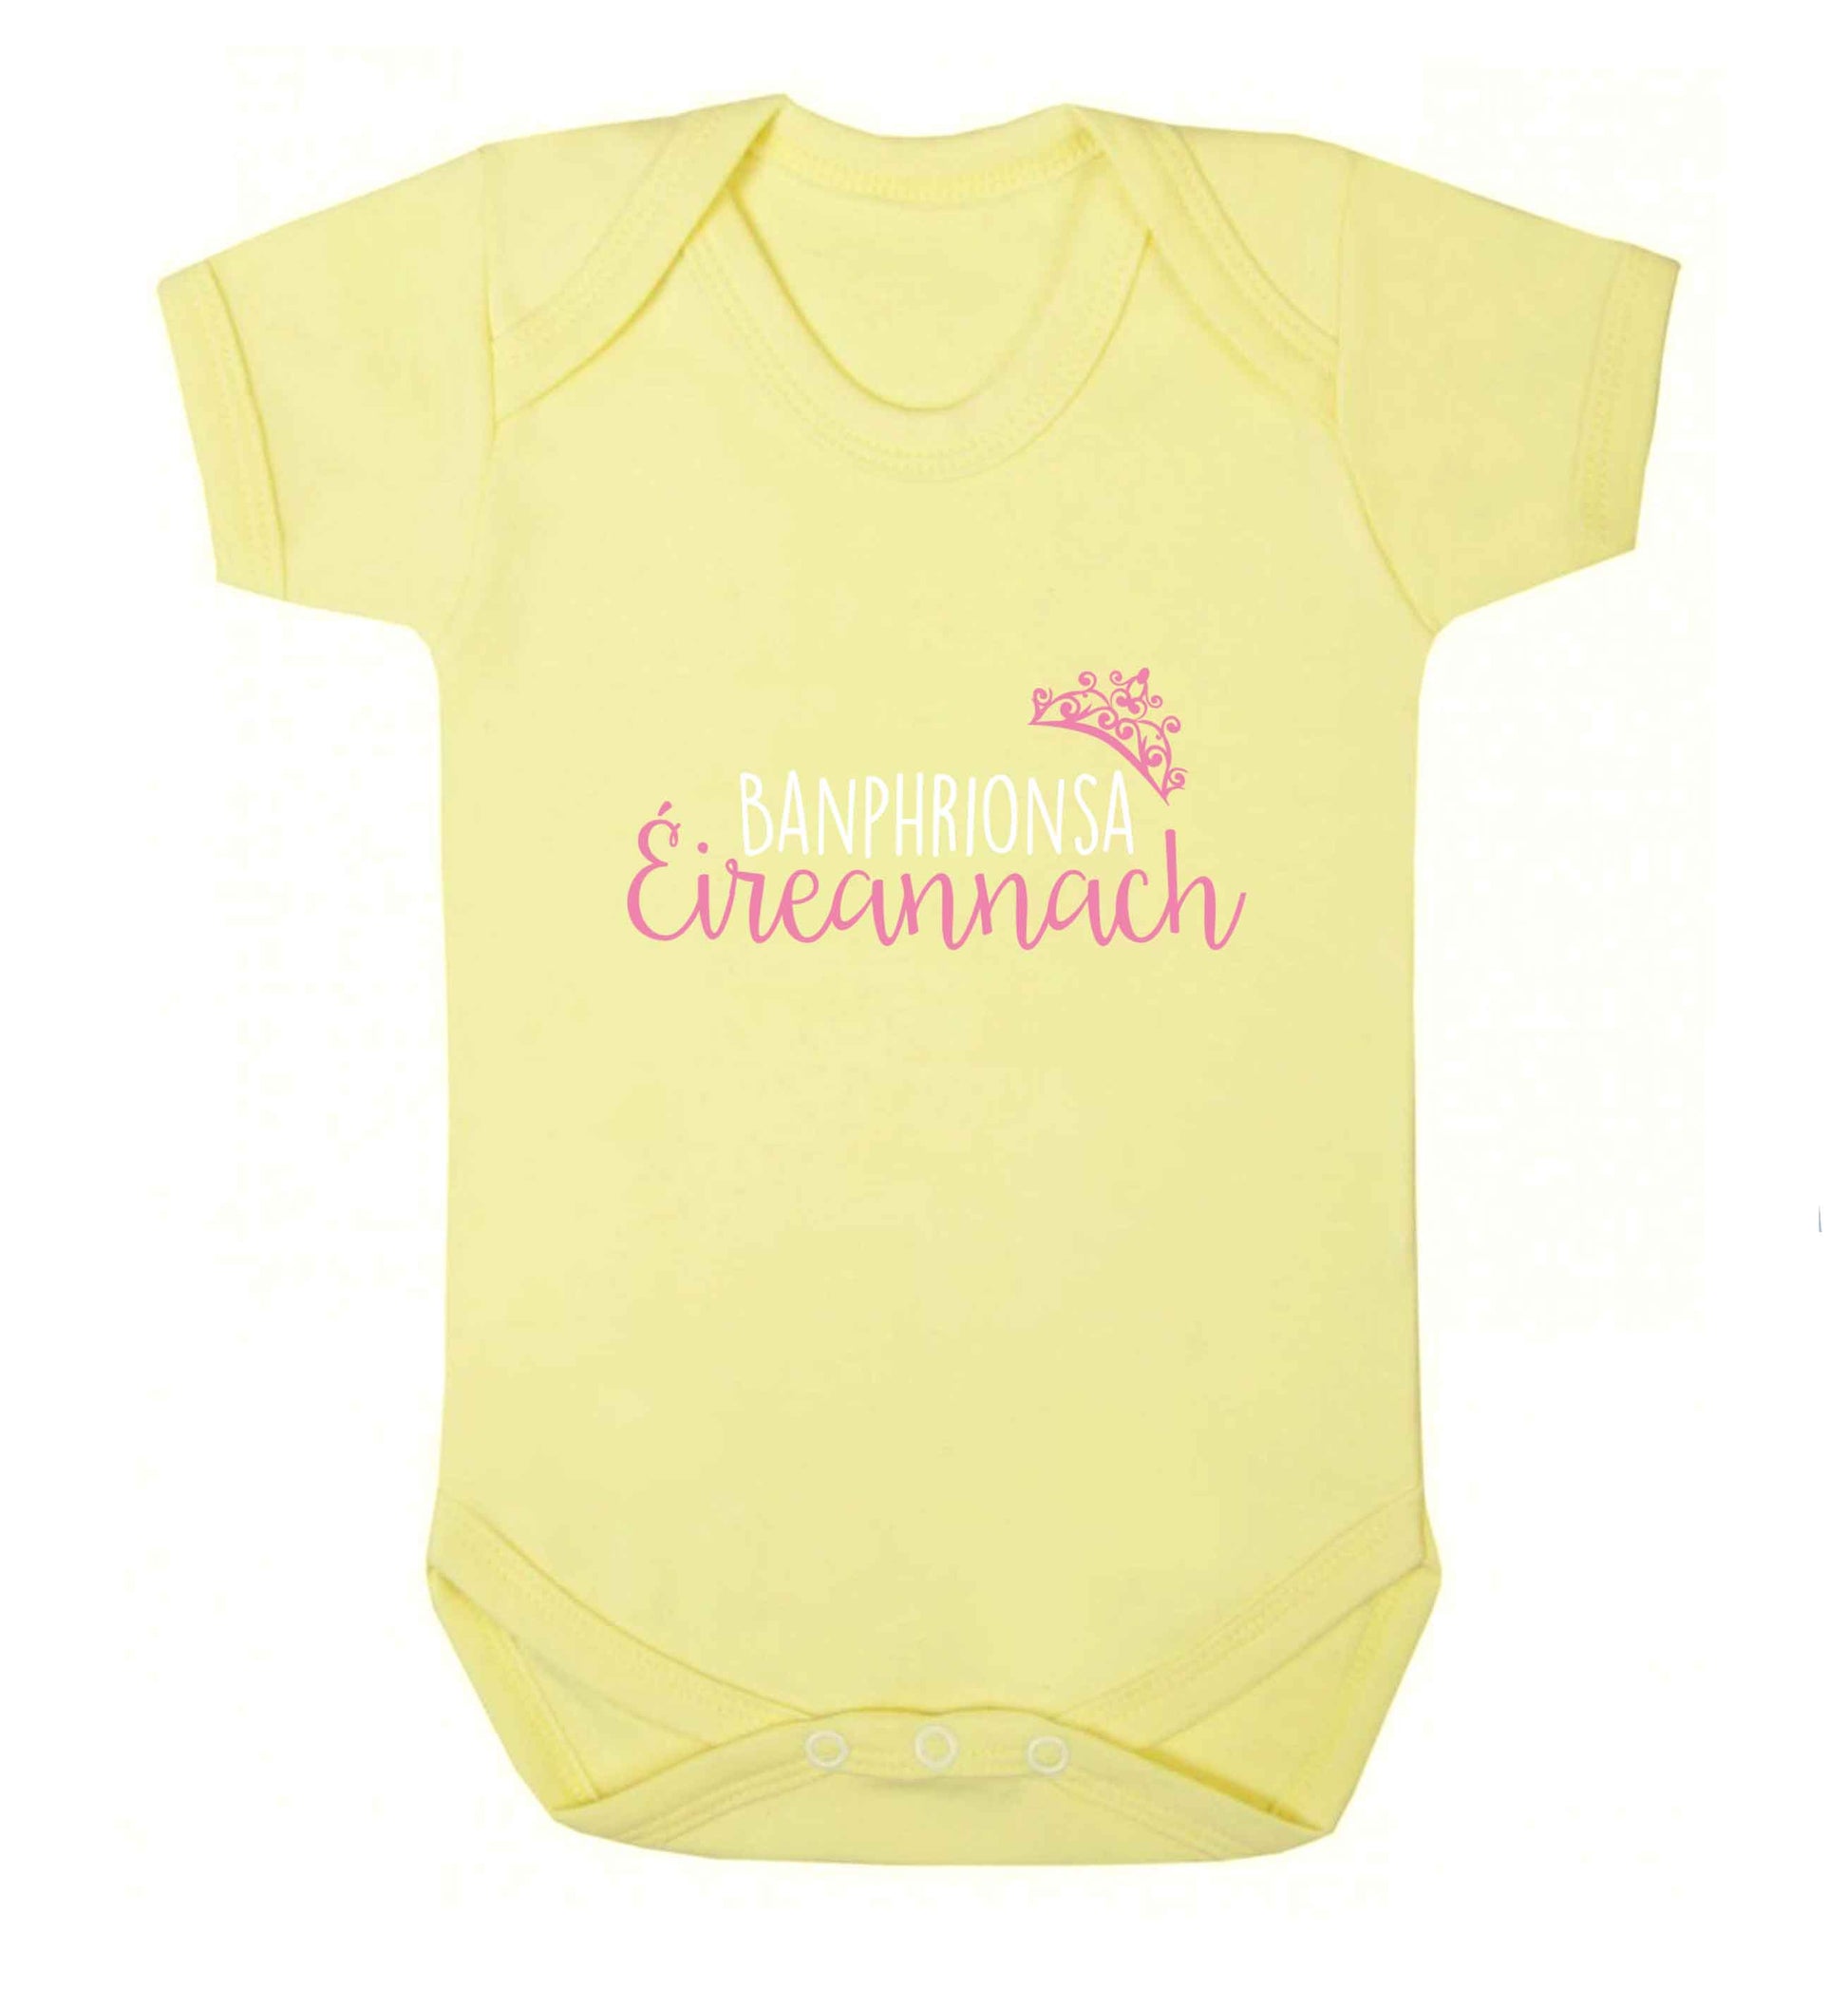 Banphrionsa eireannach baby vest pale yellow 18-24 months